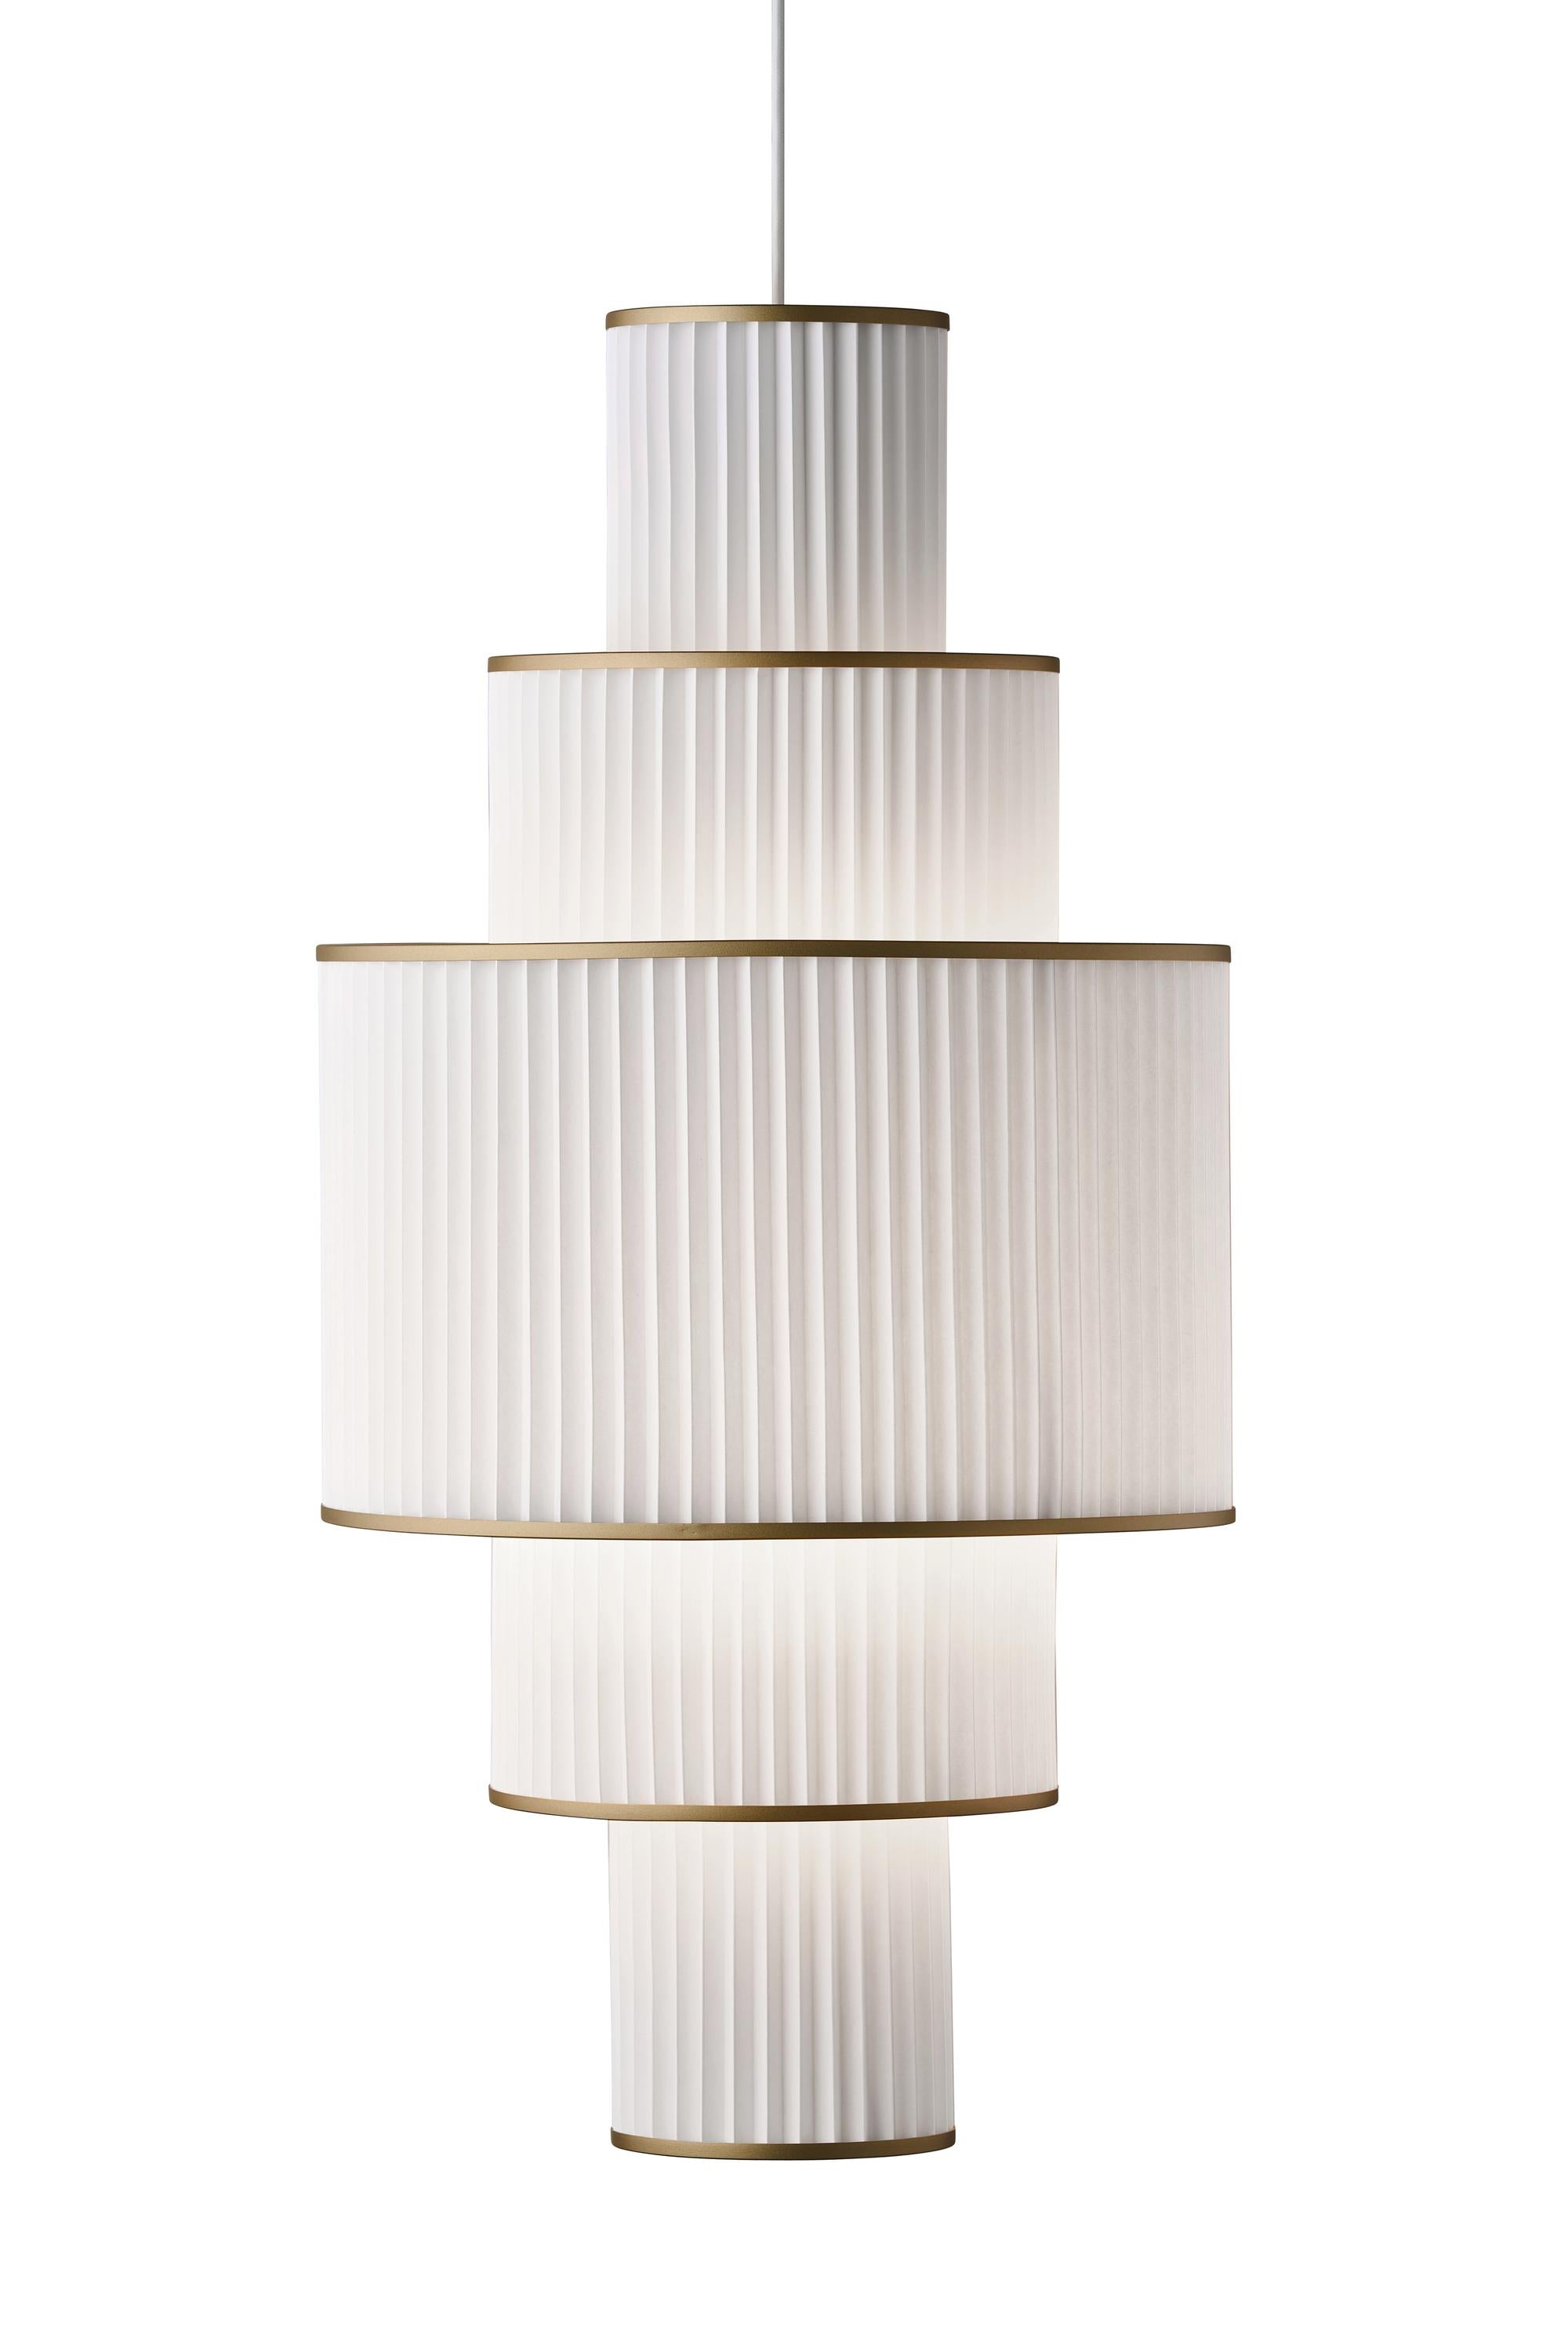 Le Klint Plivello Suspension Lamp Golden/White With 5 Shades (S M L M S)